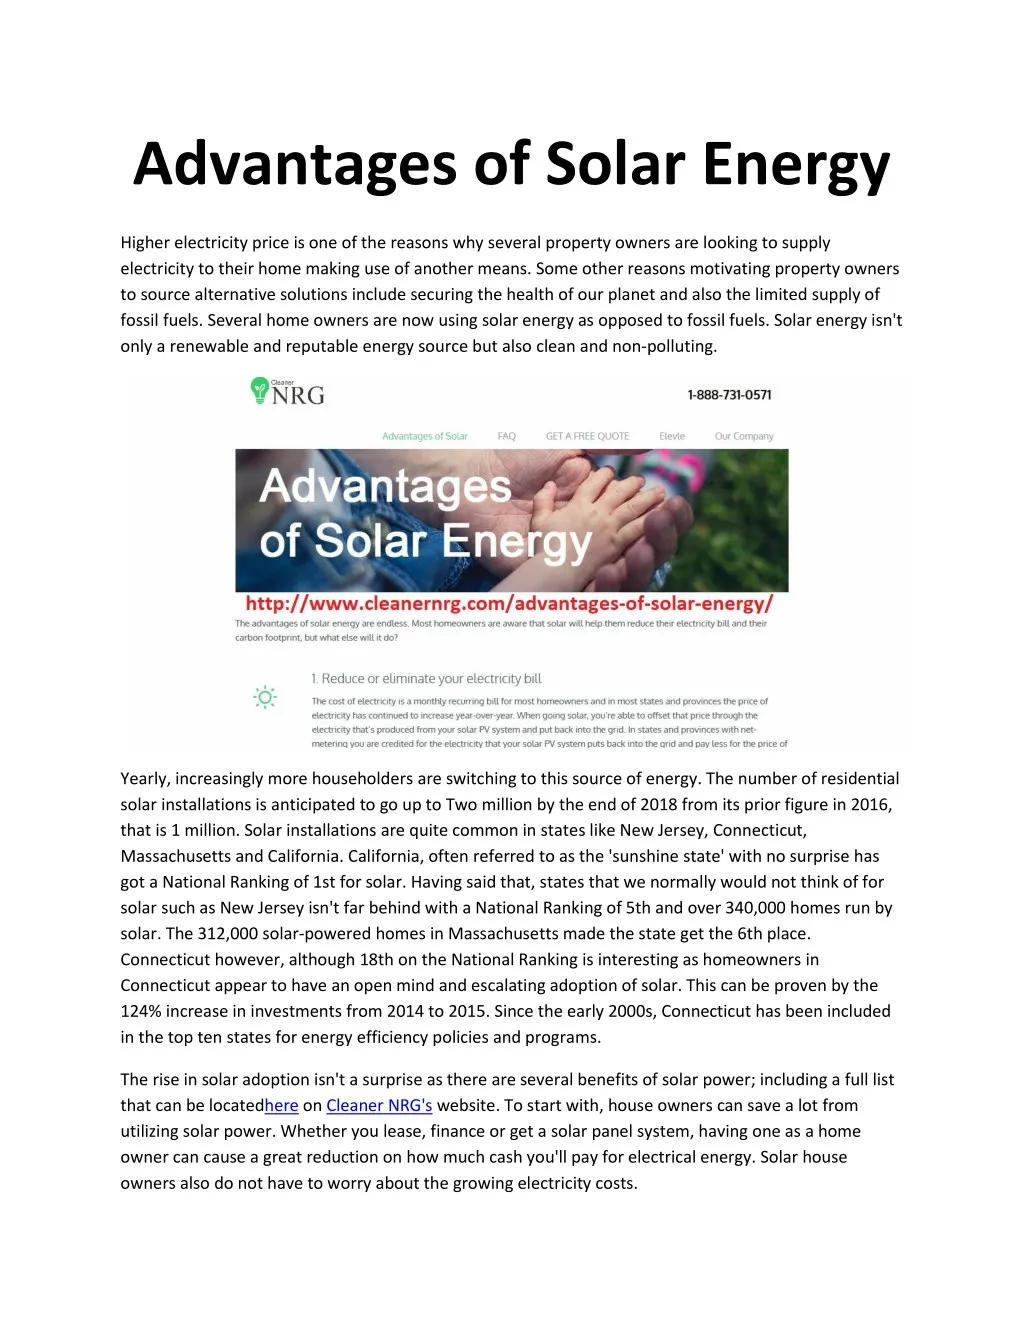 advantages of solar energy